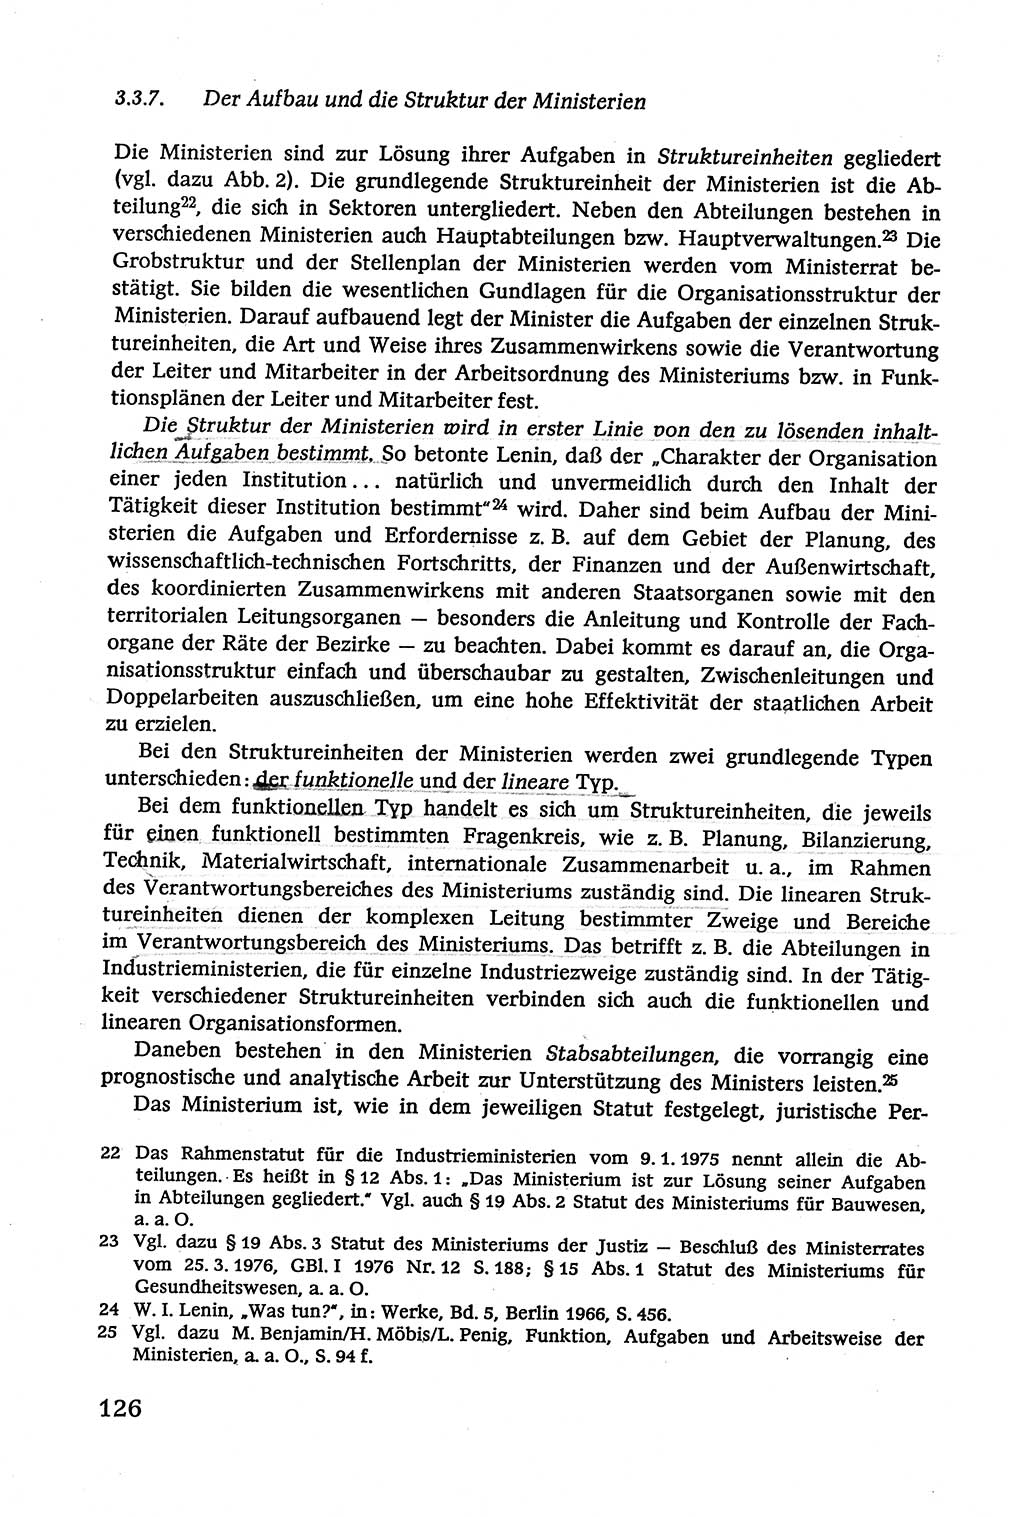 Verwaltungsrecht [Deutsche Demokratische Republik (DDR)], Lehrbuch 1979, Seite 126 (Verw.-R. DDR Lb. 1979, S. 126)